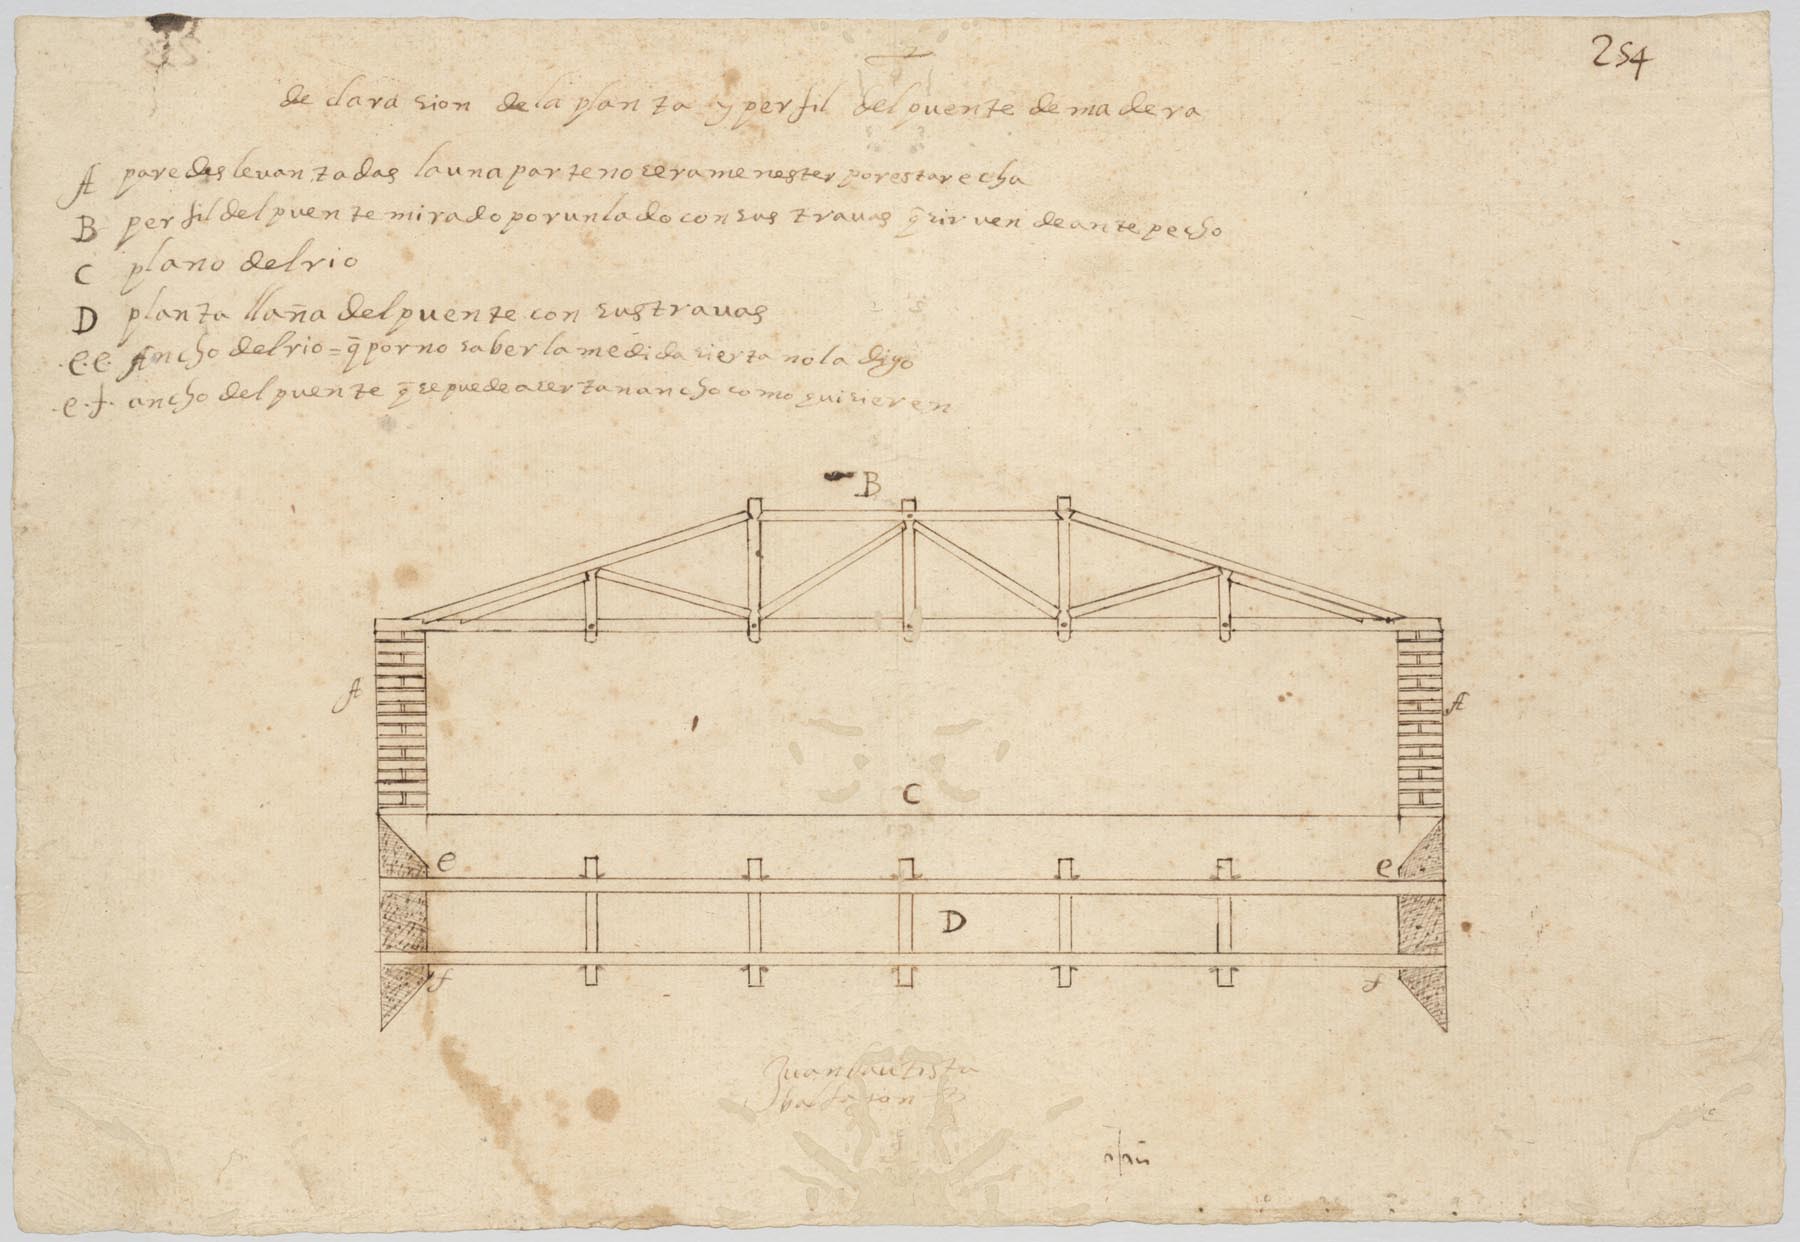 Plano de puente de madera para paso del rebaño por el rio Segura junto a la Ñora.